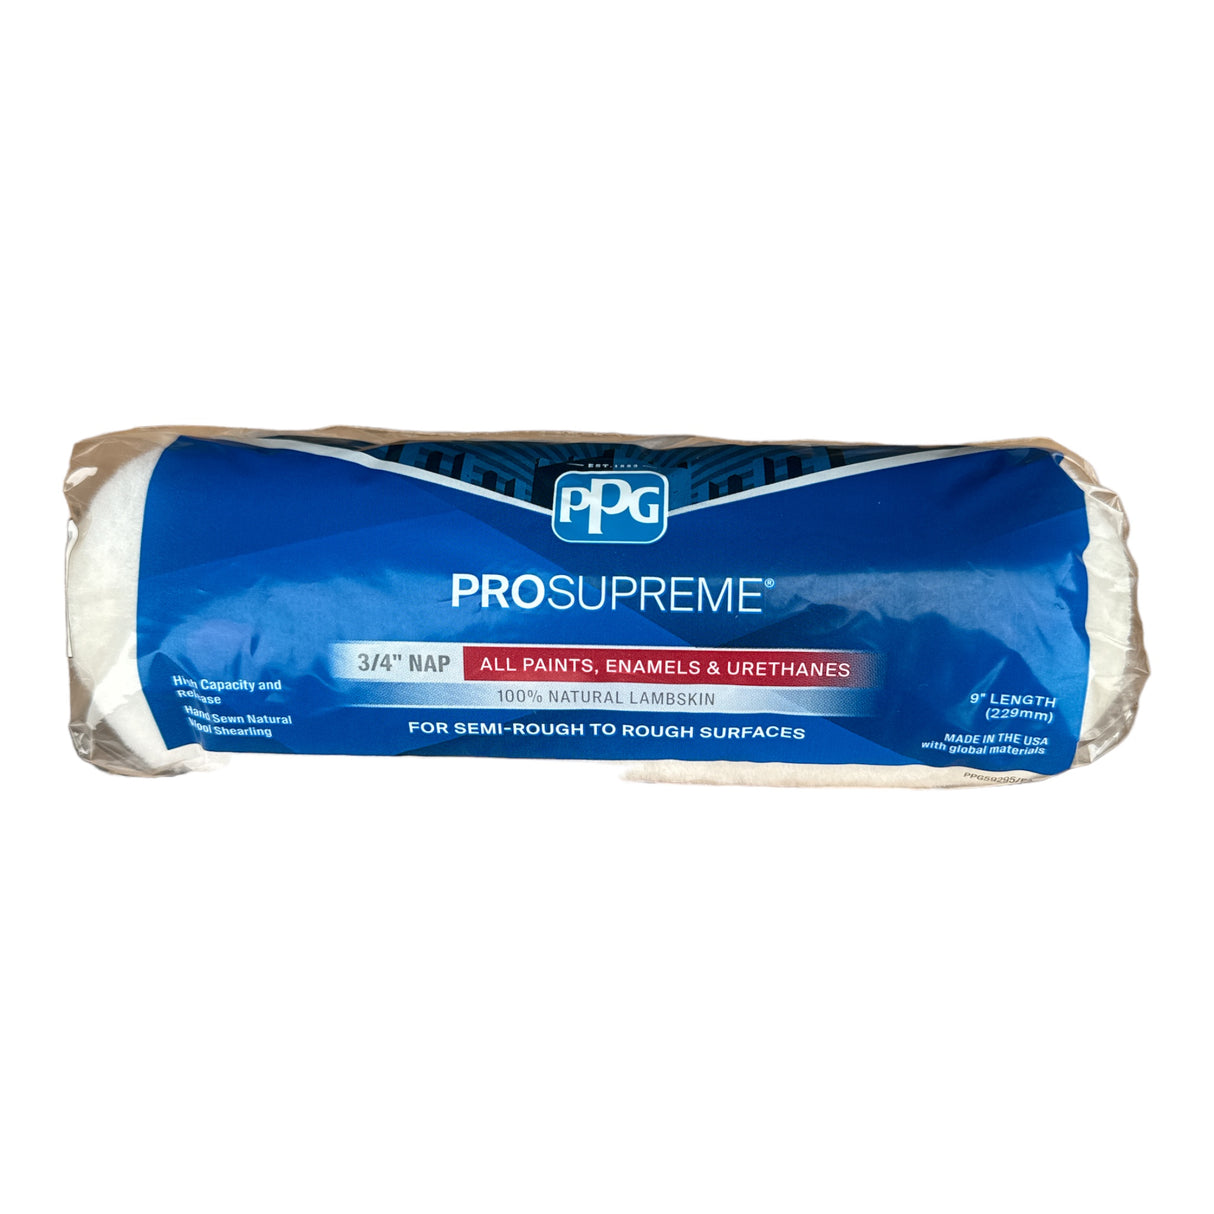 PPG® ProSupreme® Lambskin 3/4 in. NAP 9 x in. L (100% Natural Lambskin)